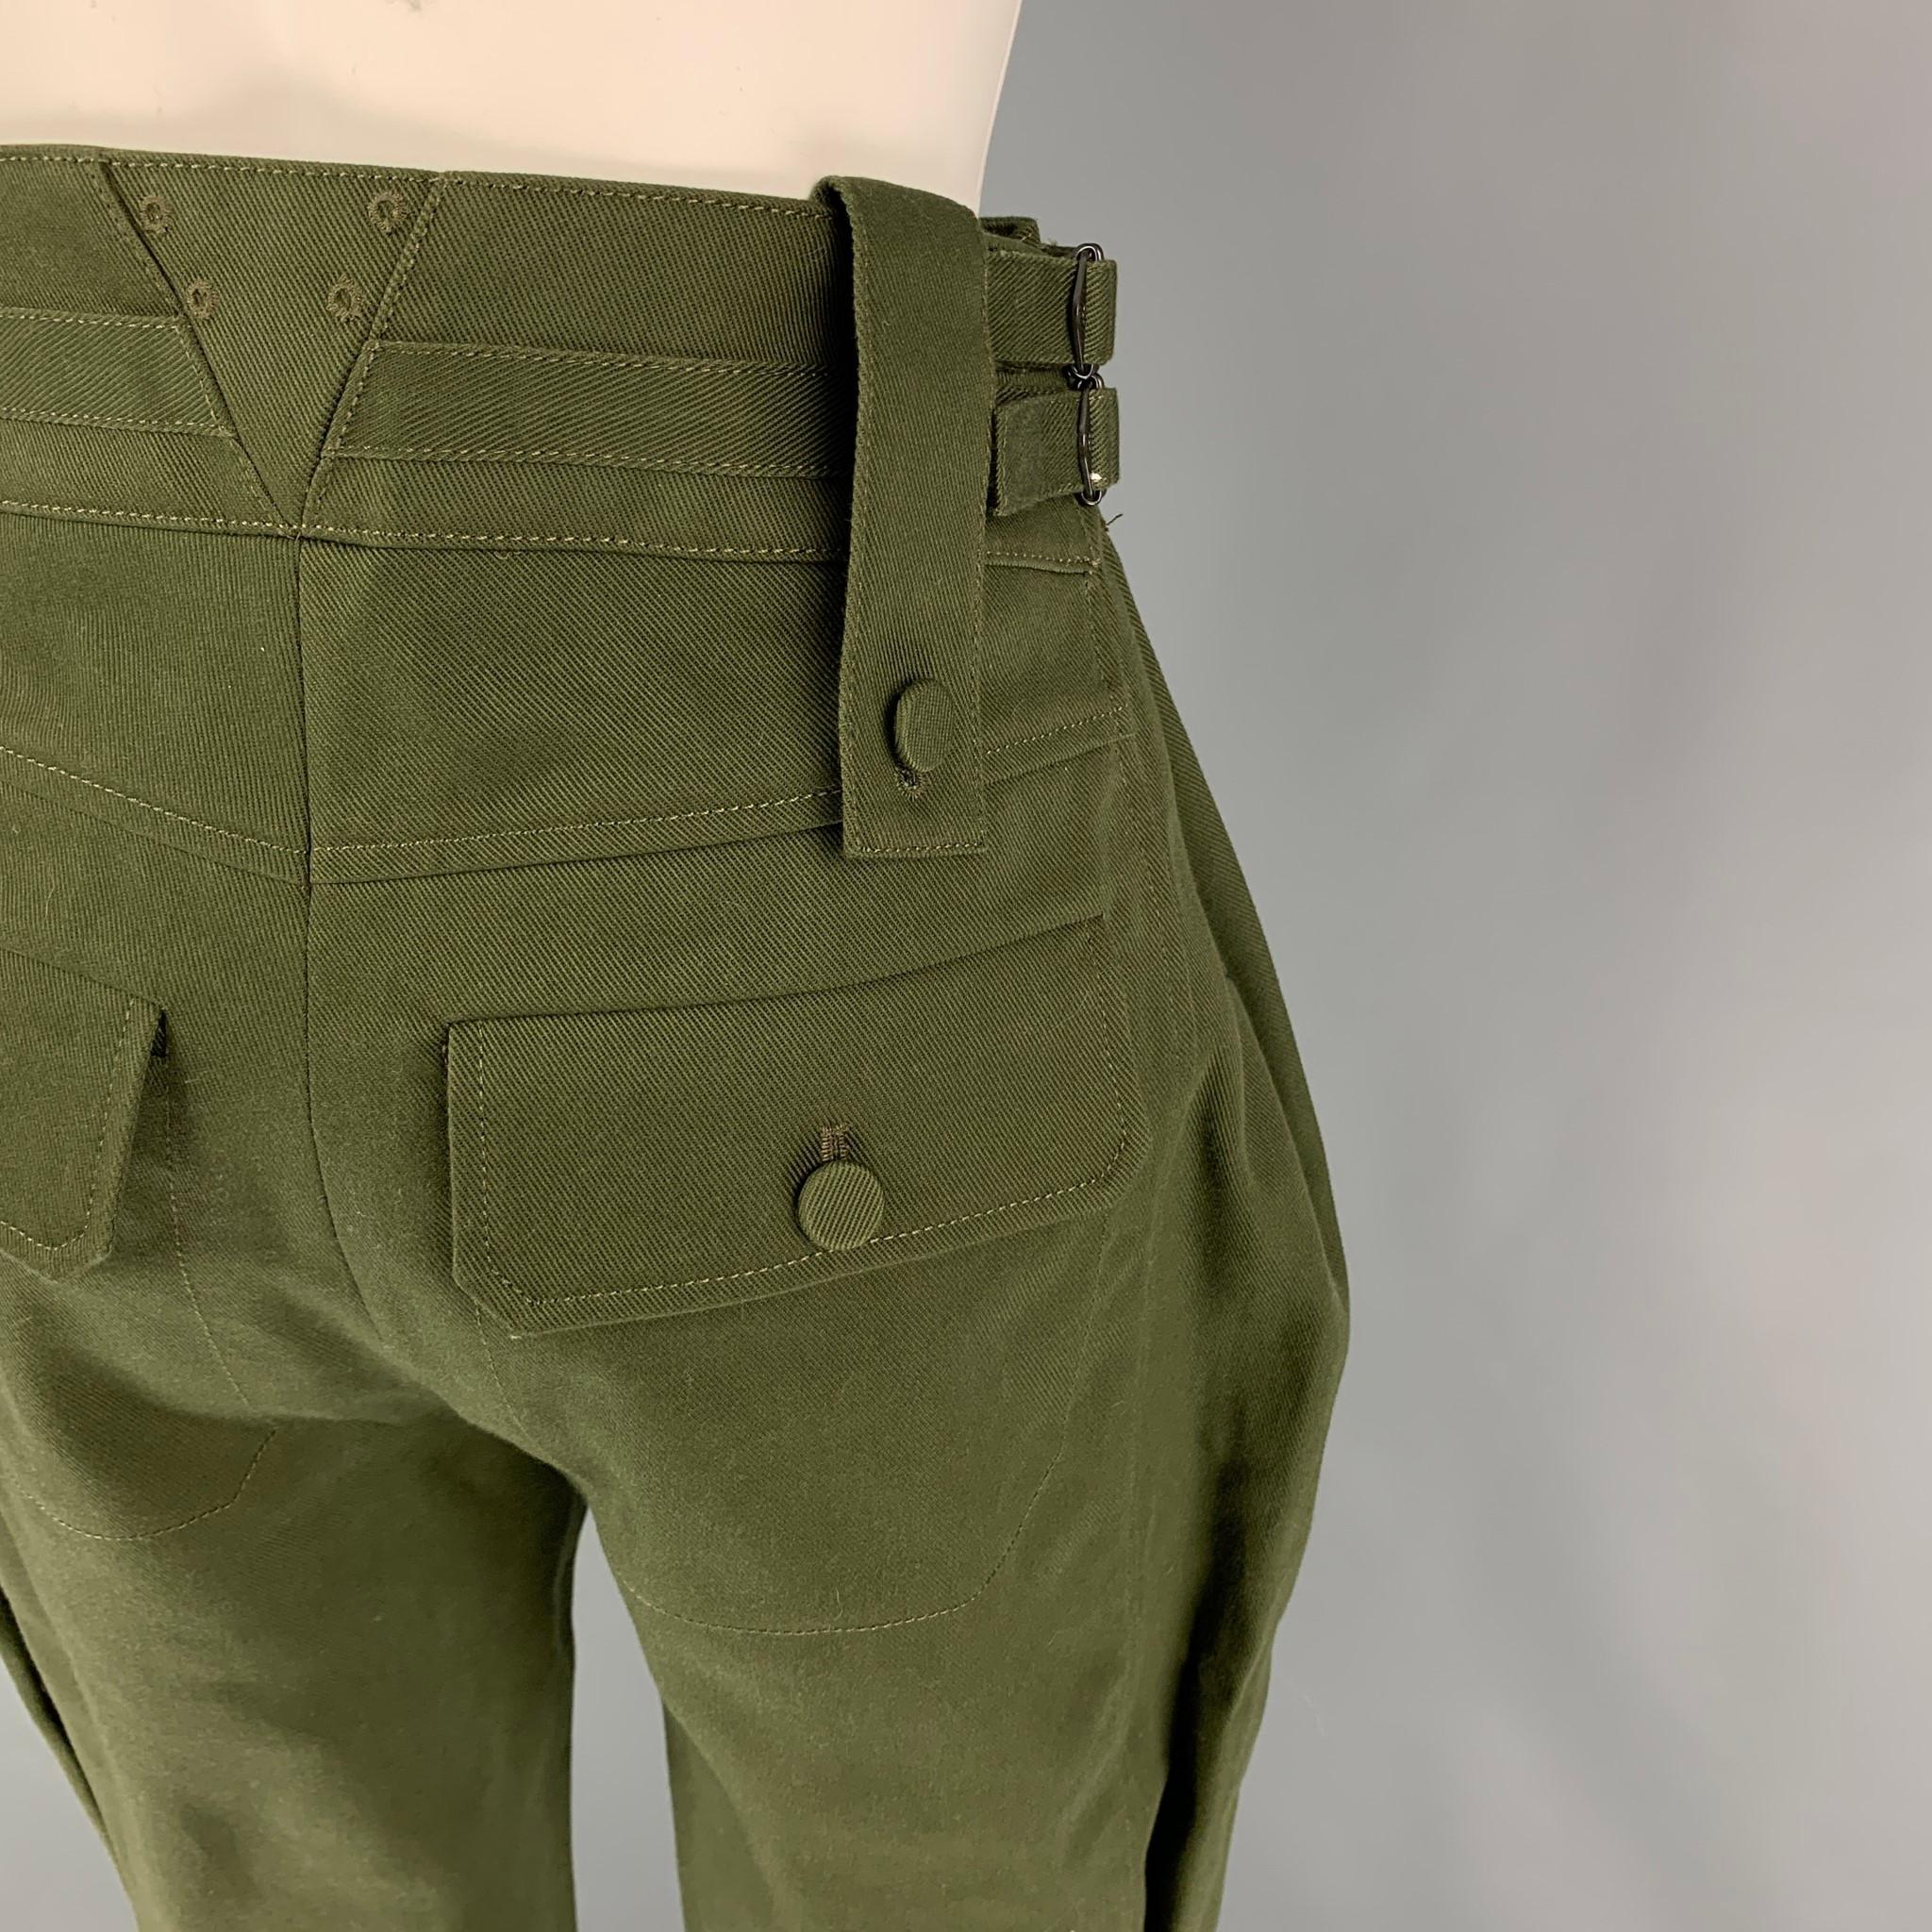  Louis Vuitton - Pantalon de jodhpurs tailleur en coton et polyester olive, taille 2 Pour femmes 